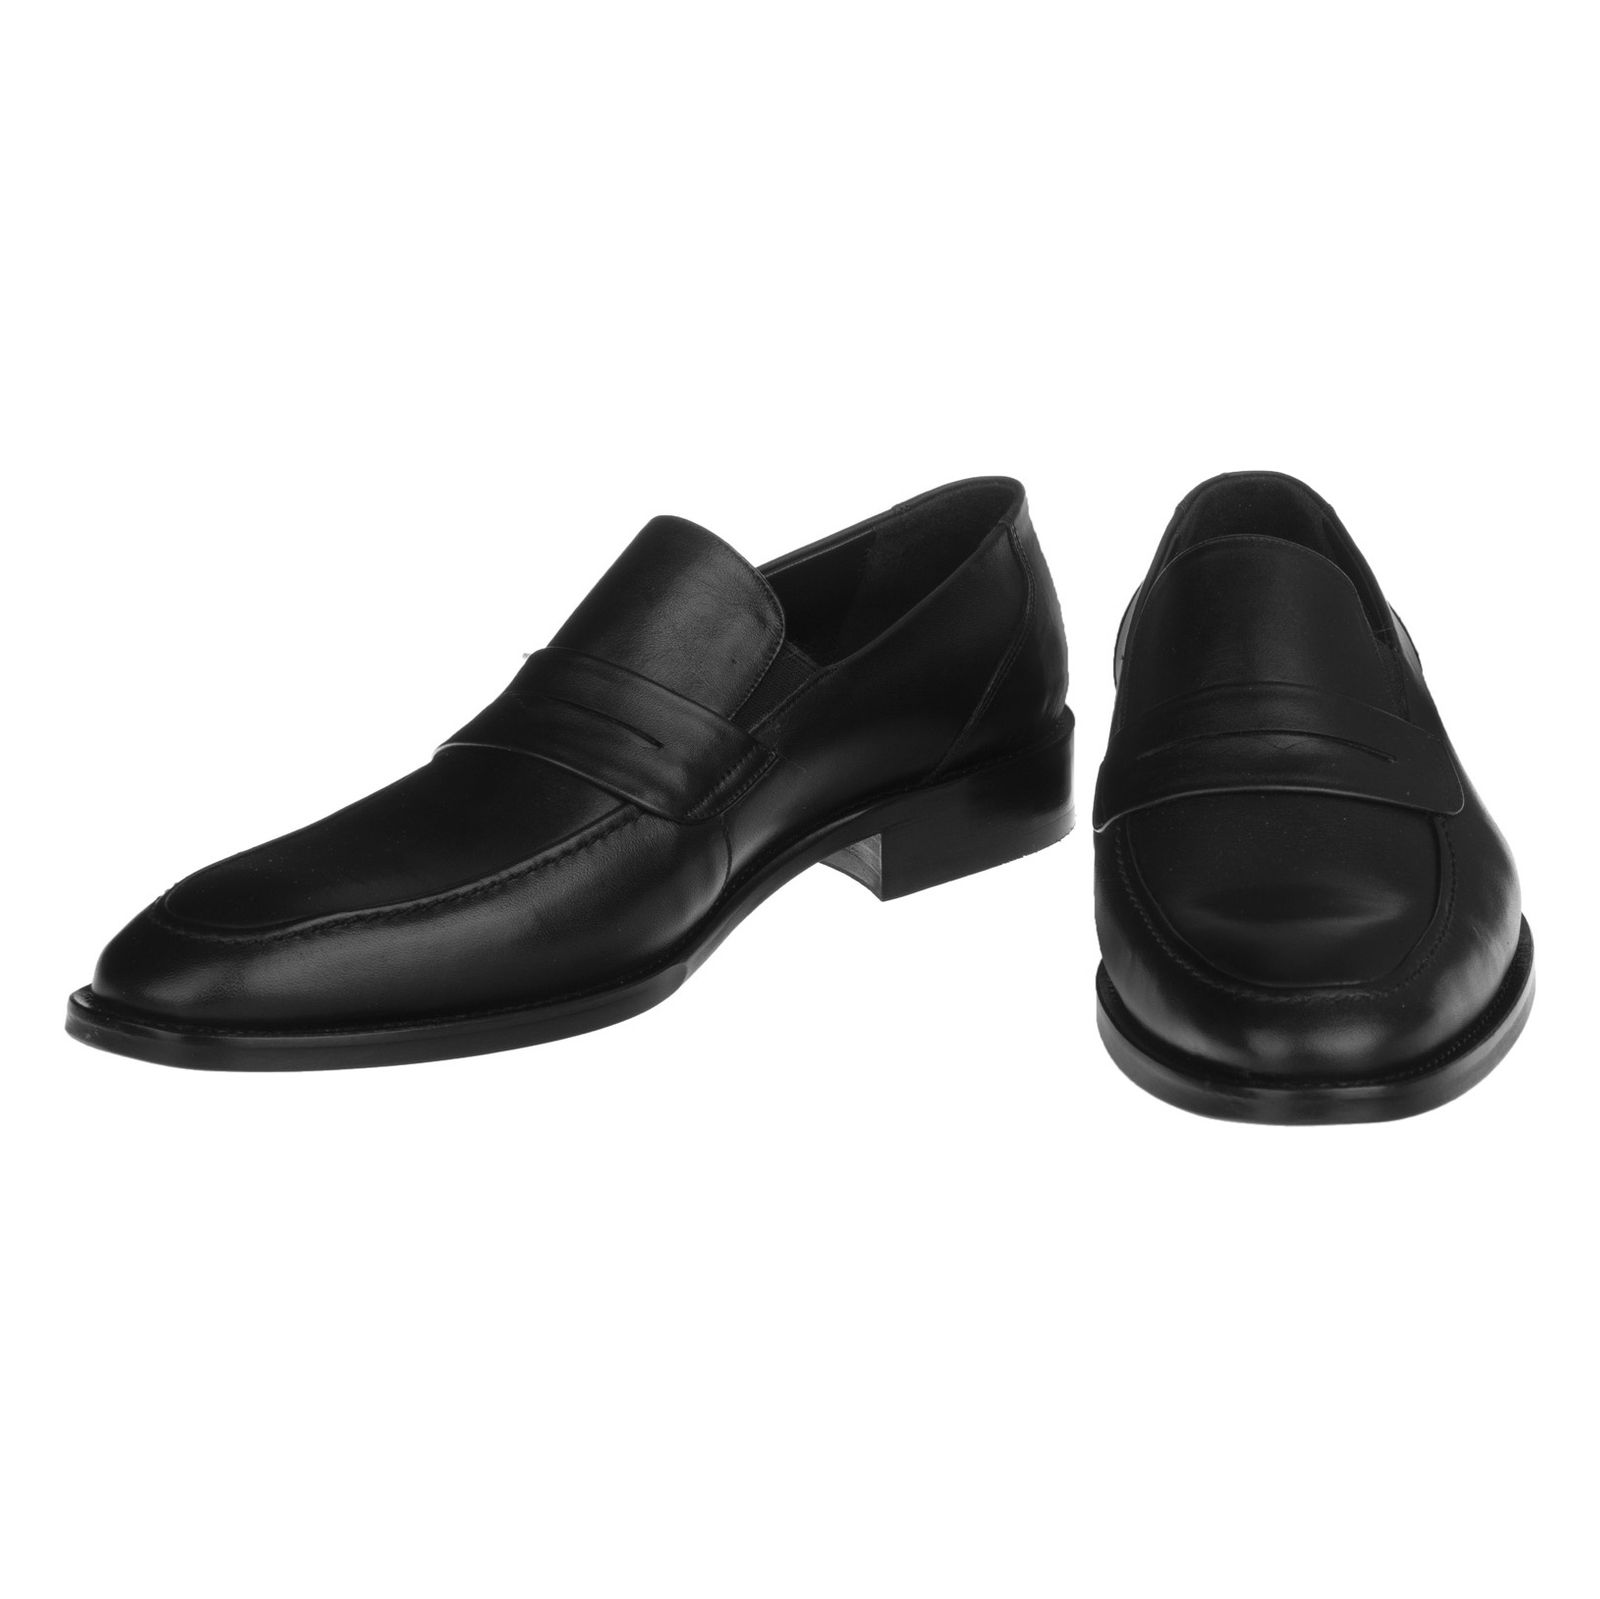 کفش مردانه گاندو مدل 99-725 - مشکی - 4